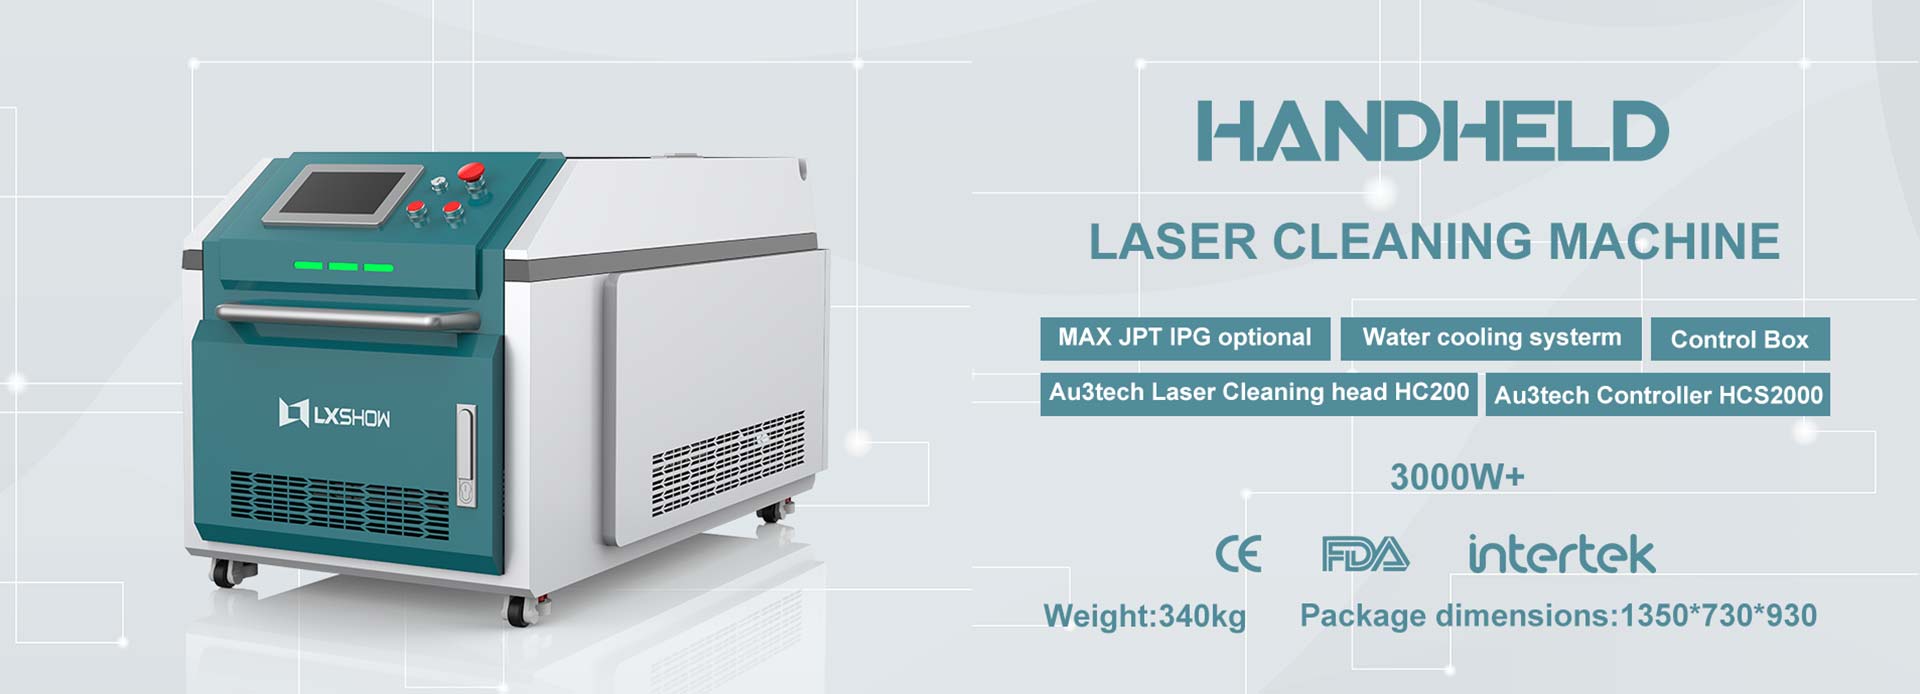 LXC-3000W फायबर लेझर रस्ट मेटल क्लीनिंग मशीन IPG RAYCUS MAX JPT